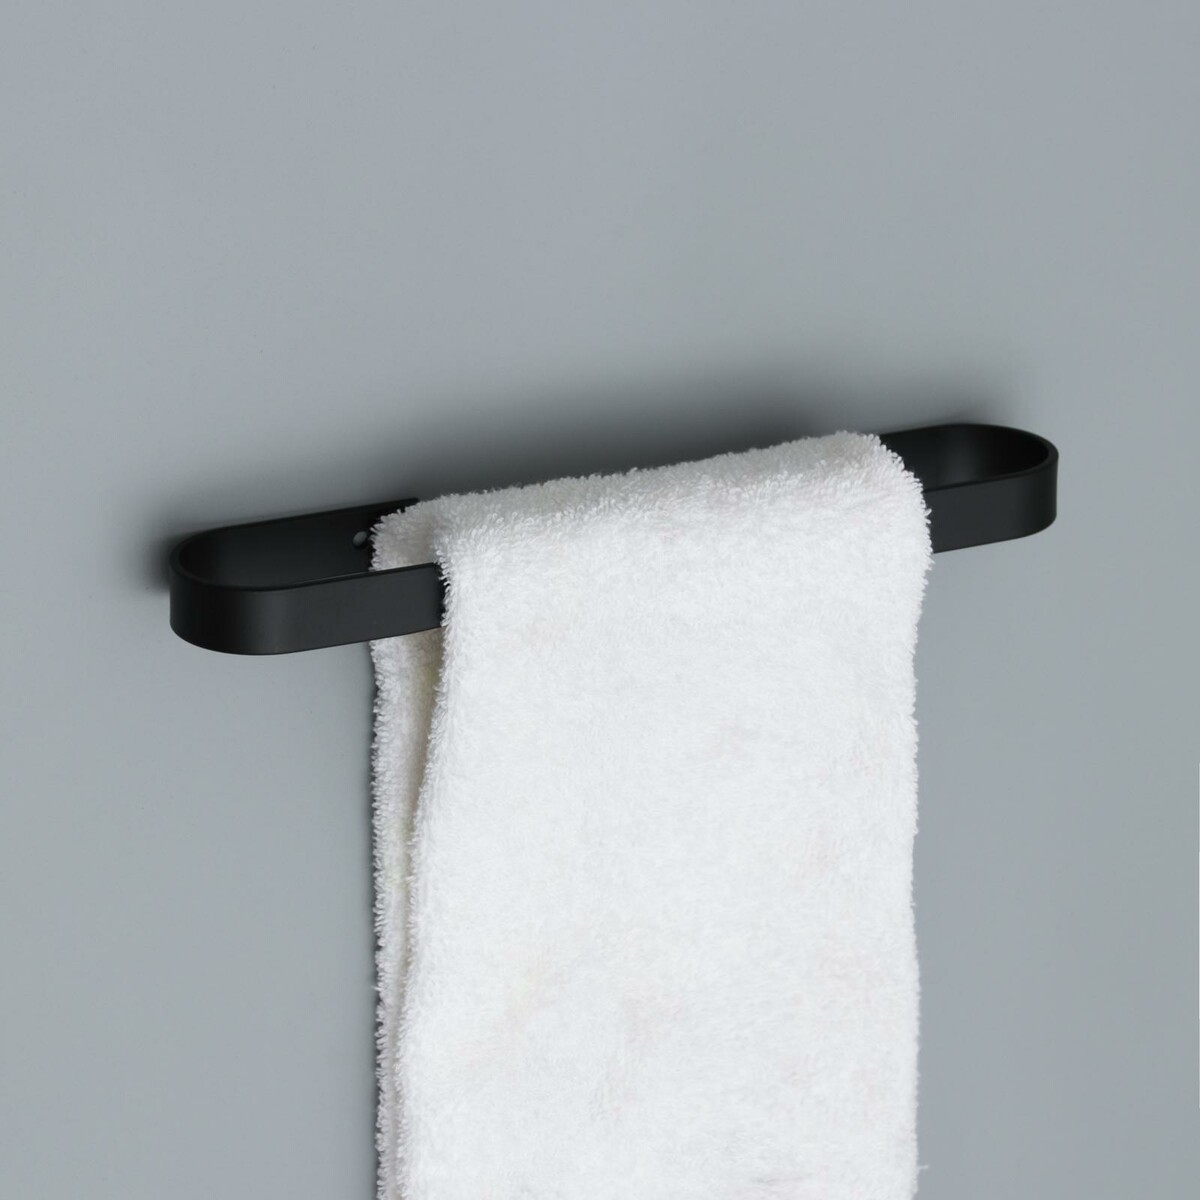 Держатель для полотенец штольц stölz, 24×6 см, цвет черный держатель для туалетной бумаги штольц stölz hölzern premiere ореховое дерево алюминий коричневый